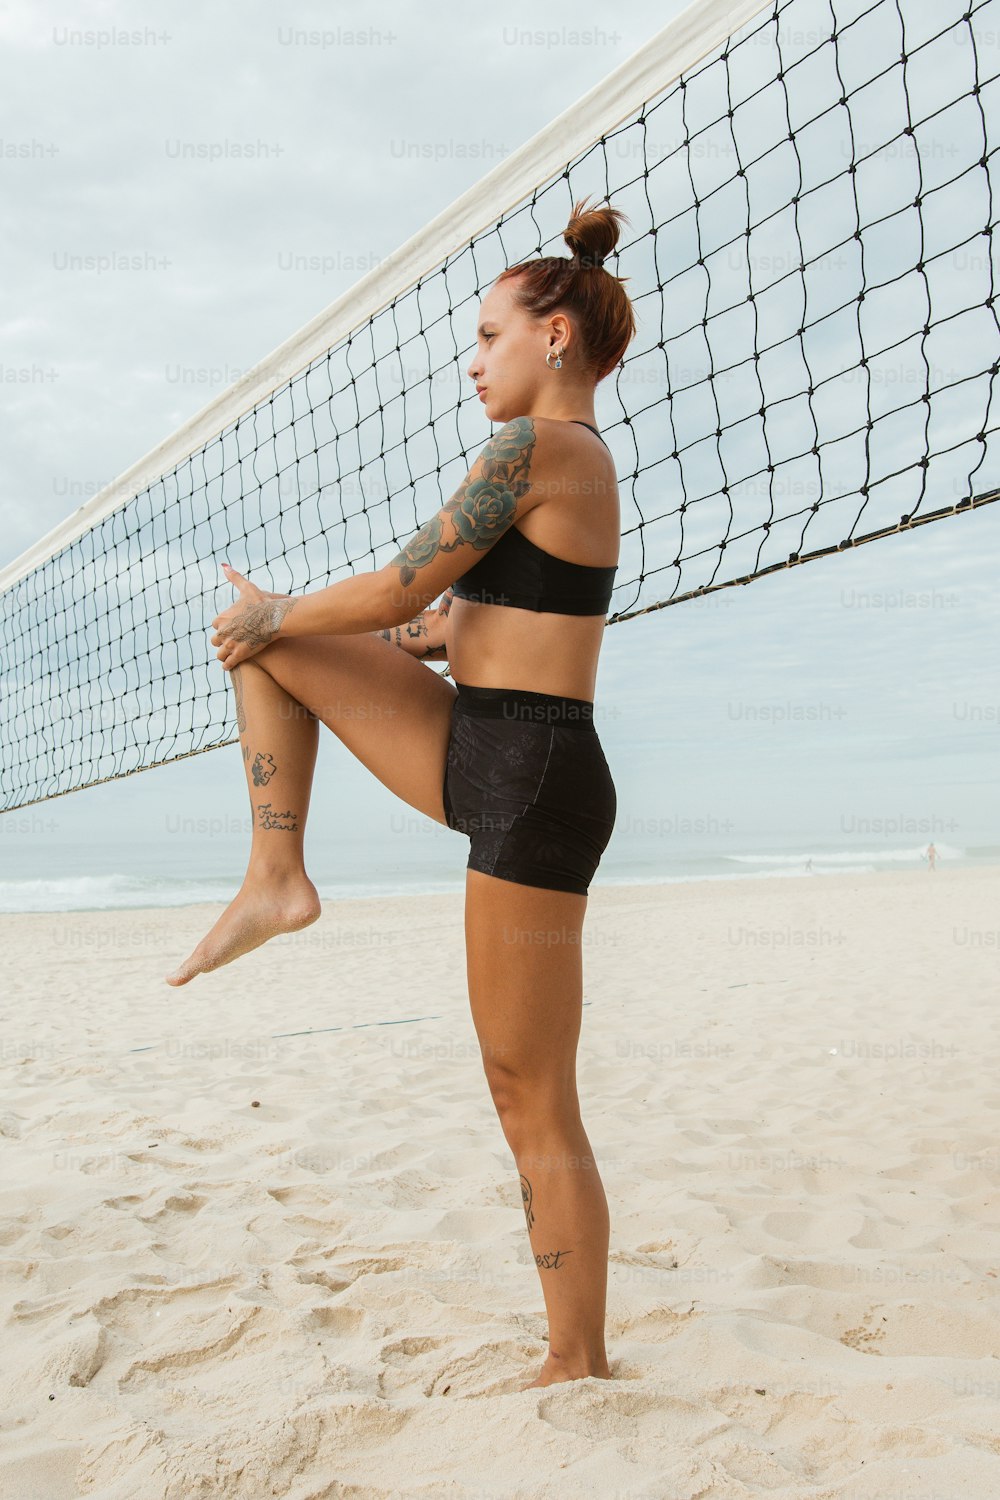 Eine Frau steht am Strand neben einem Volleyballnetz